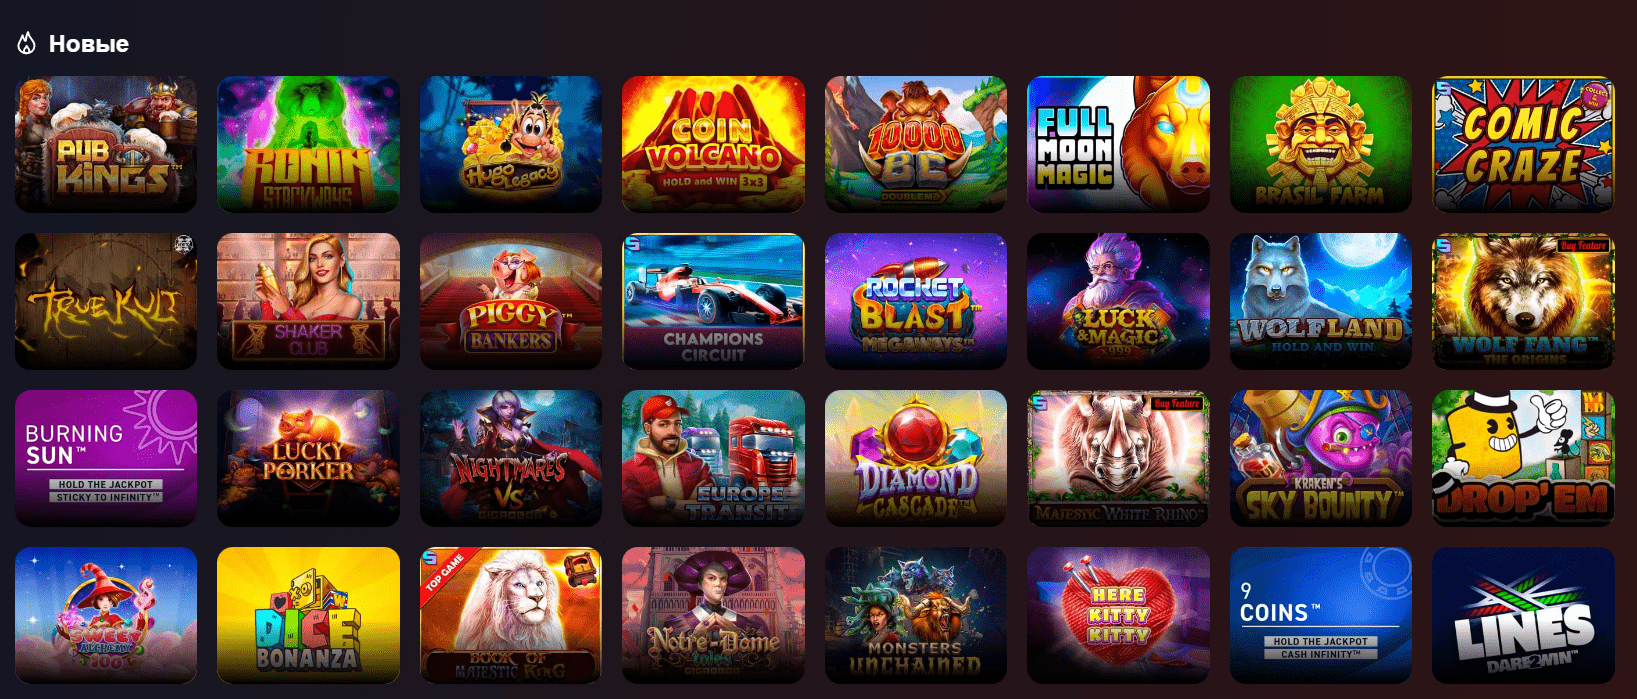 Обзор официального сайта Luck casino